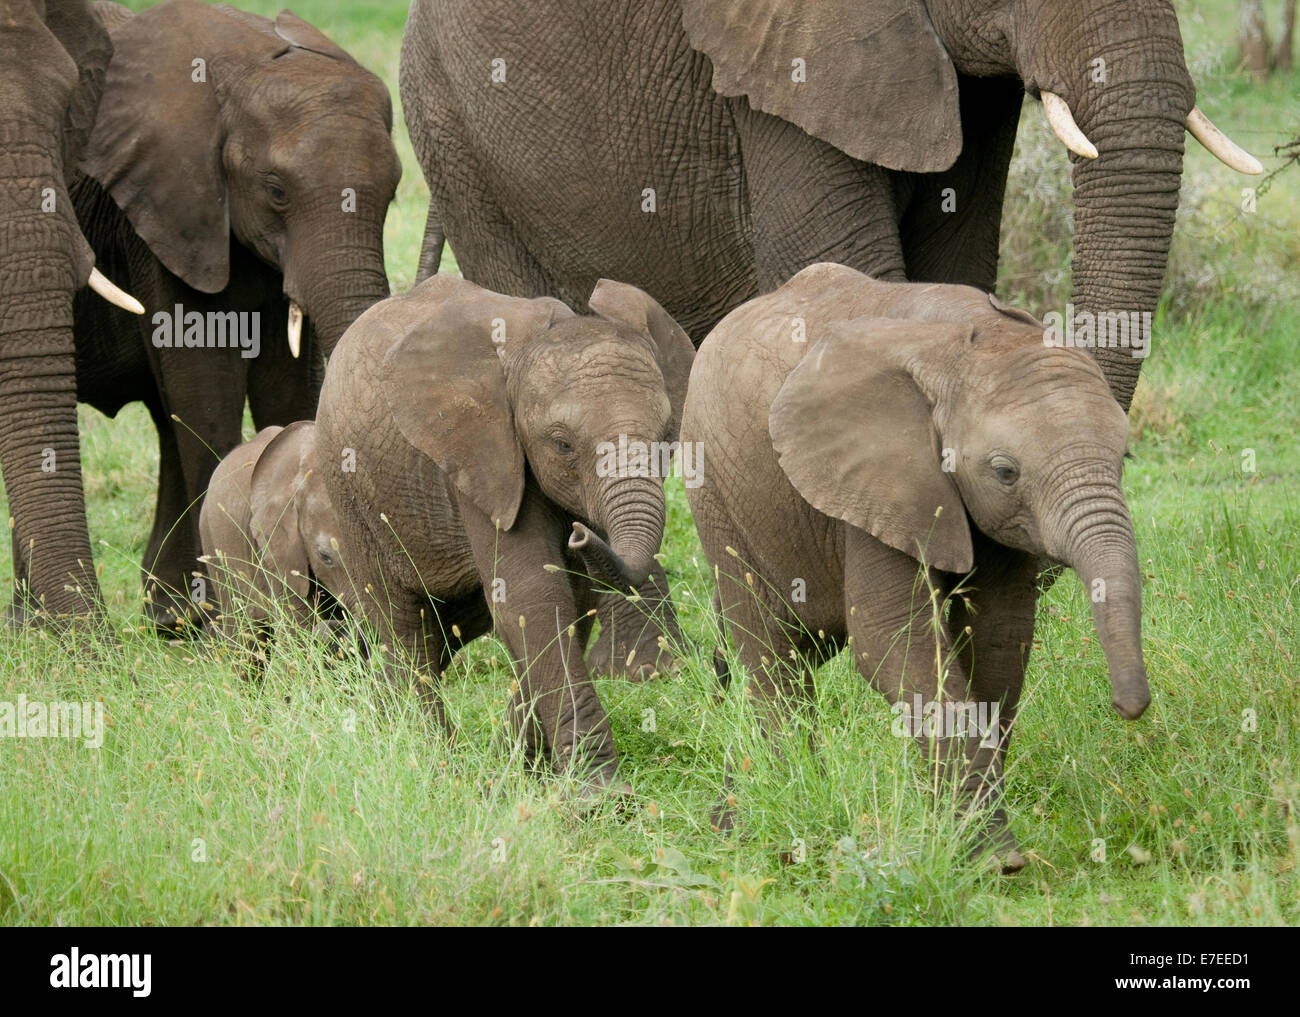 Young elephants walking alongside adults Stock Photo